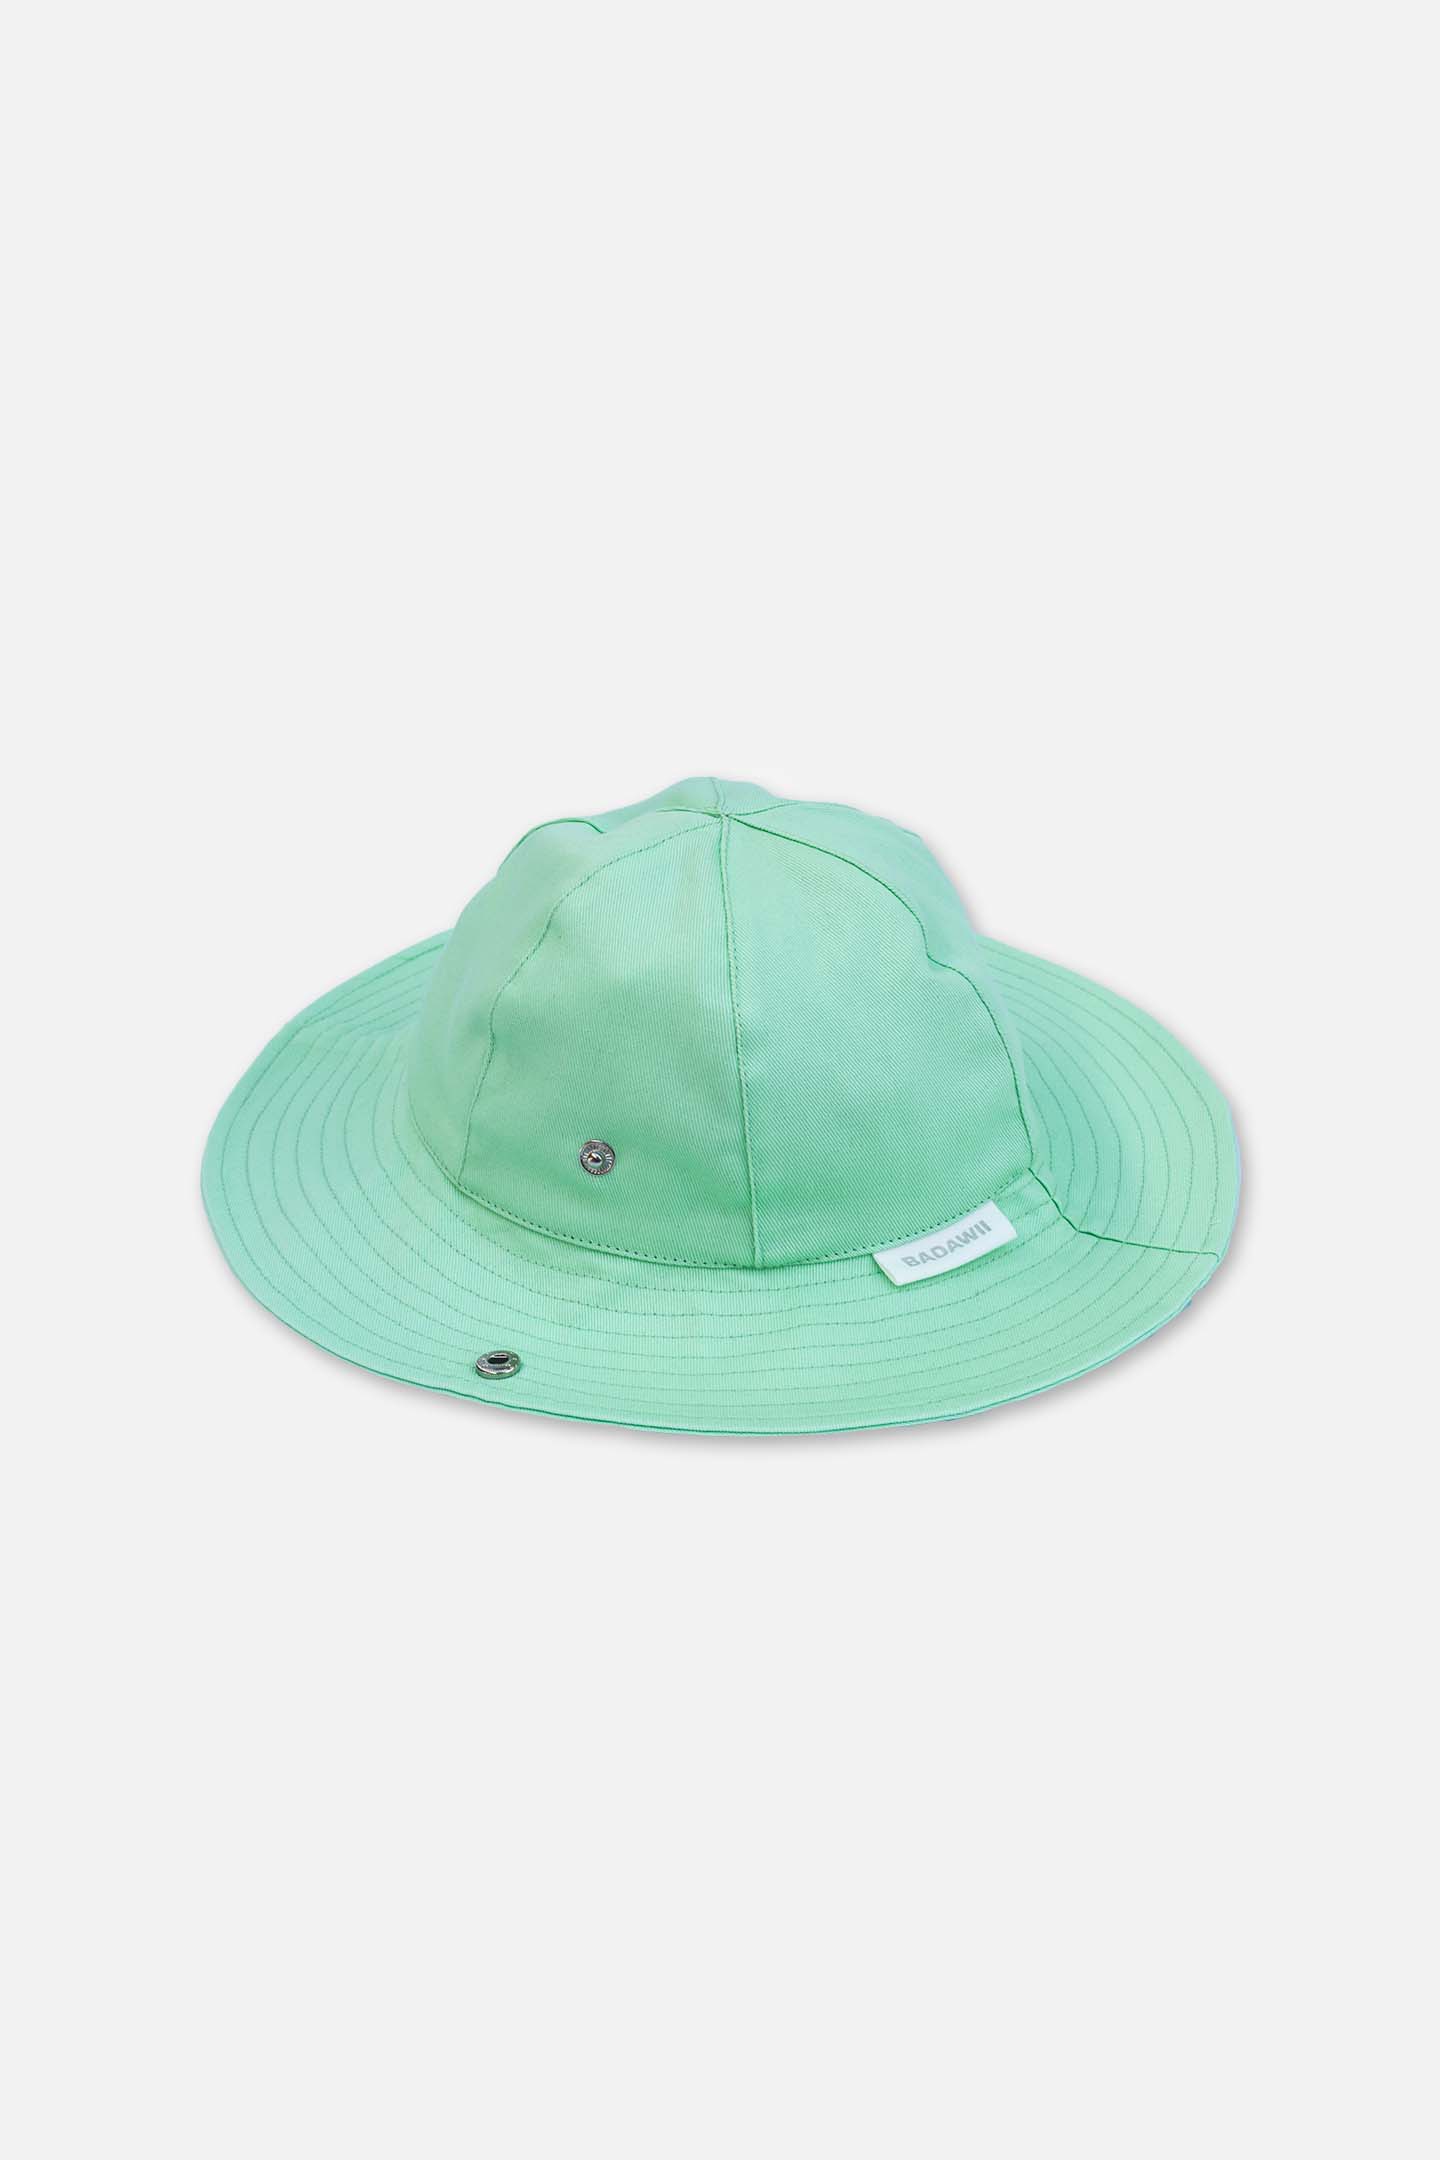 Chapeau de plage bebe/enfant - vert menthe